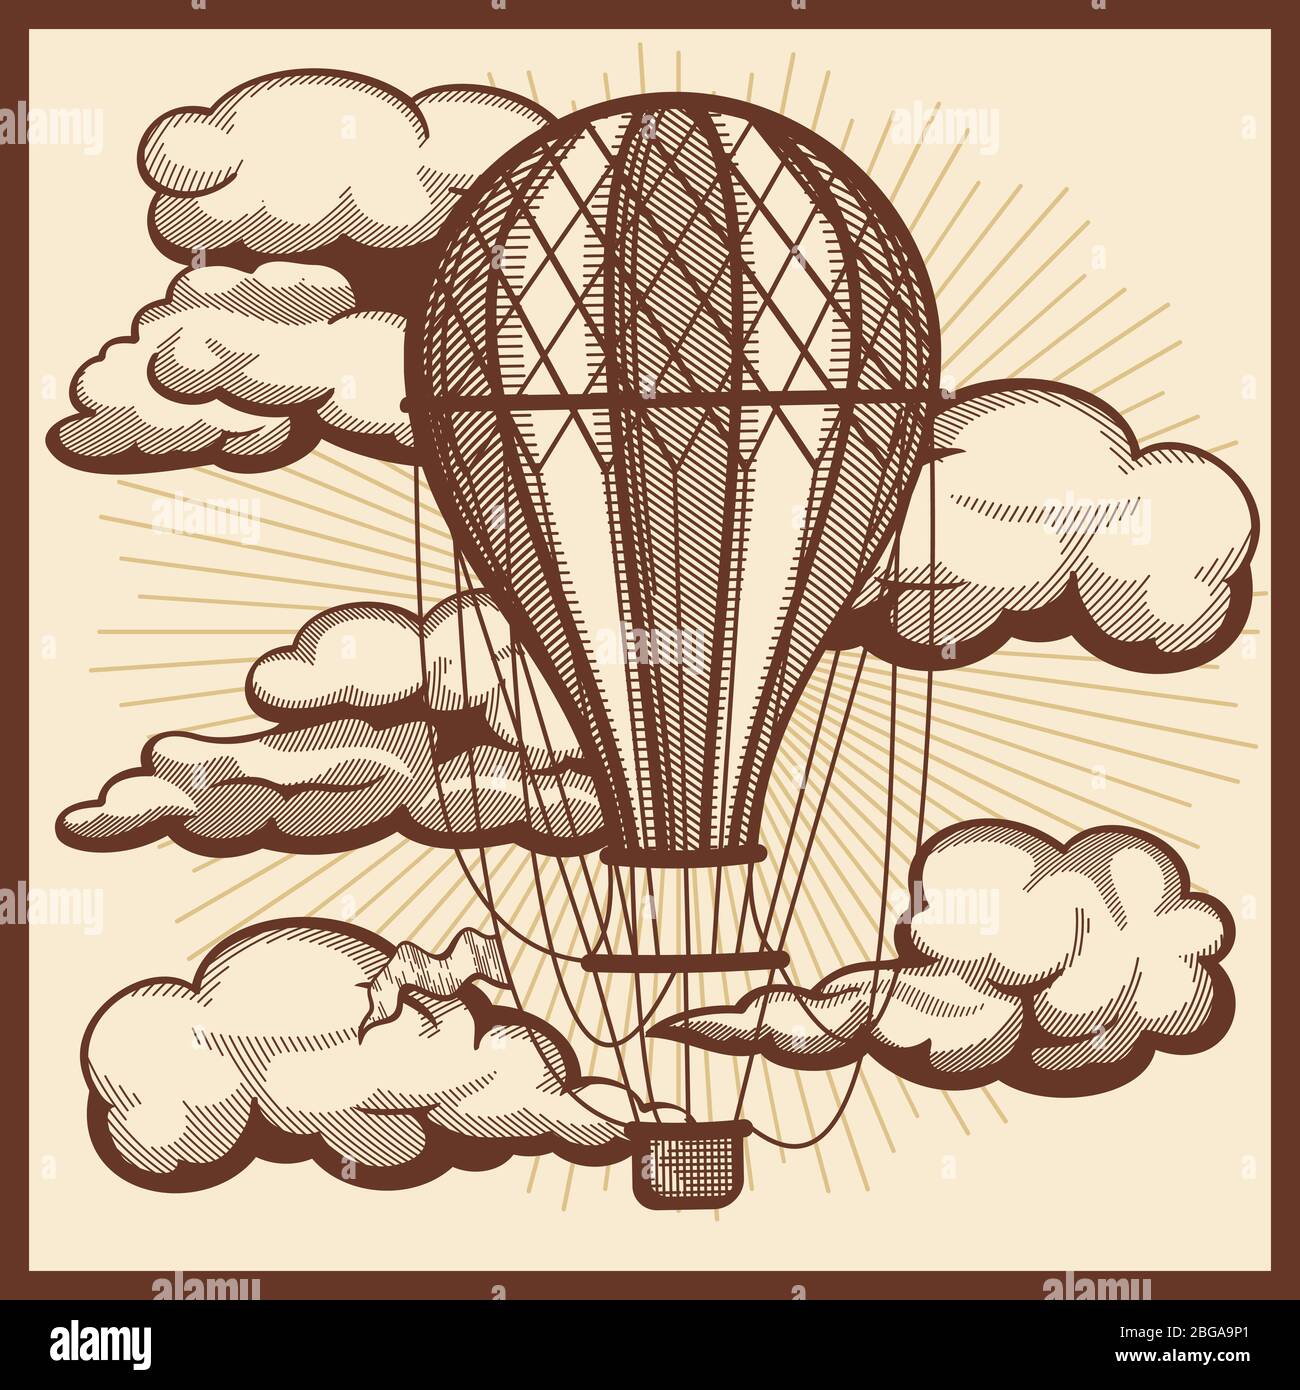 Nuages dessinés à la main et esquisse vintage de vecteur de bulle d'air. Vol en montgolfière dans le ciel, illustration du transport aérien rétro Illustration de Vecteur